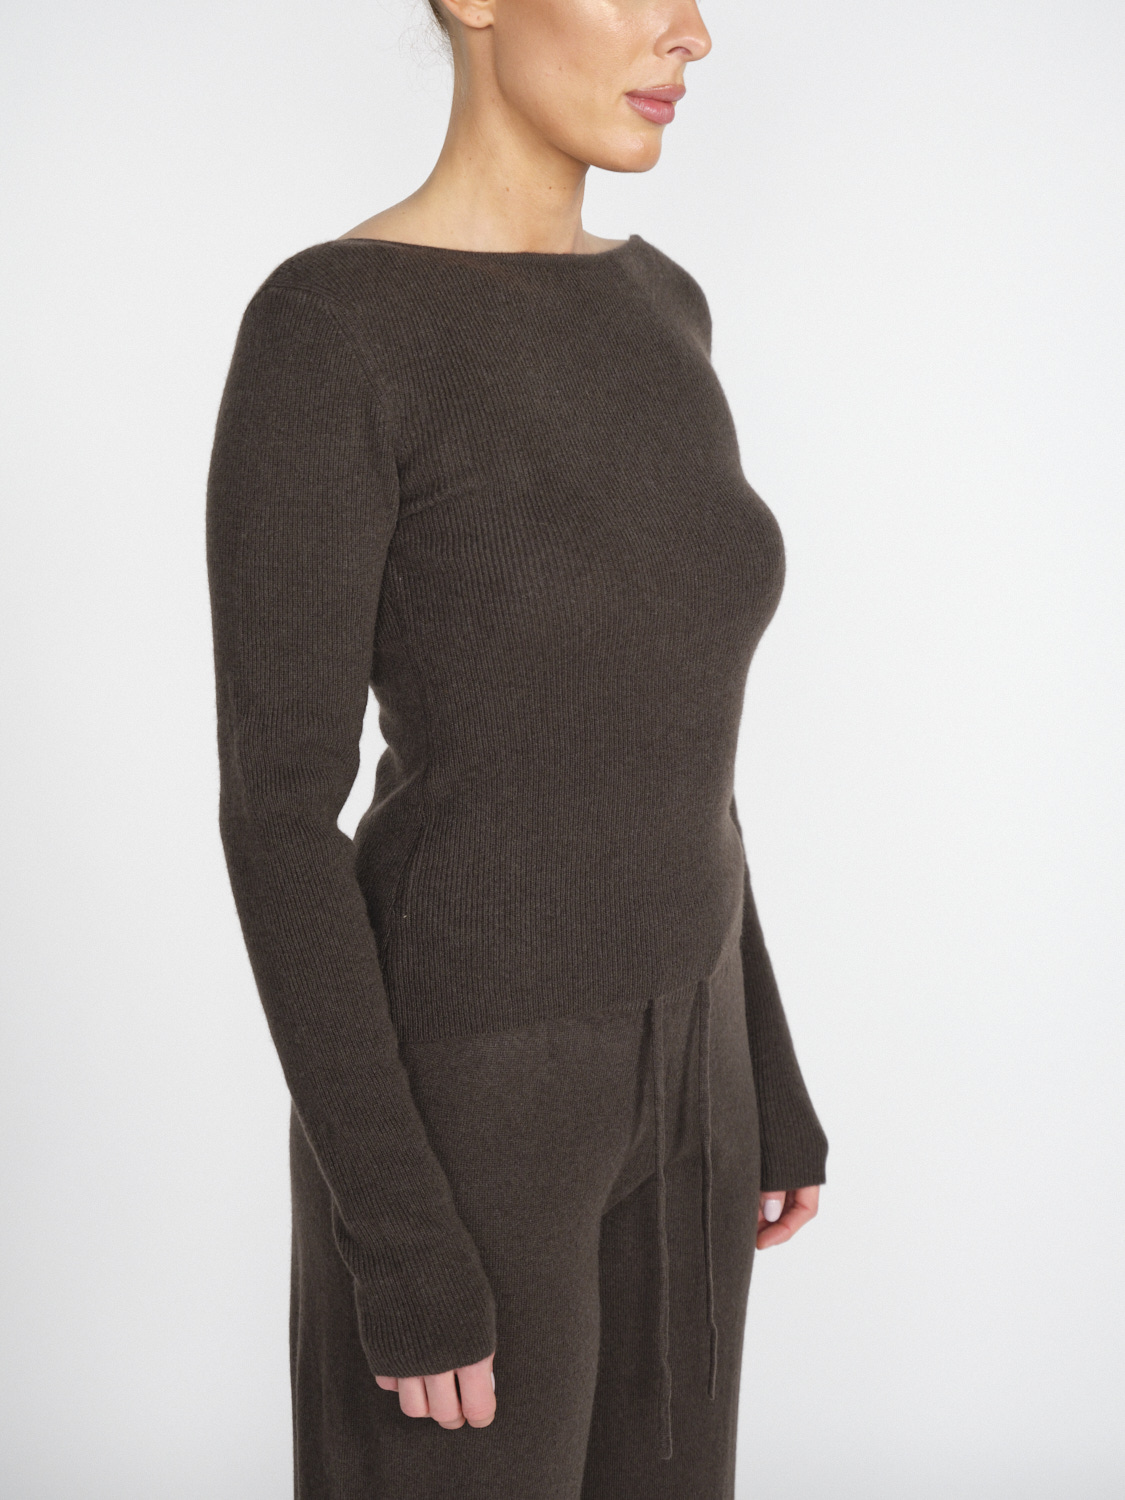 Lisa Yang Juliette – Pullover aus Kaschmir mit großem Rückenausschnitt  braun XS/S